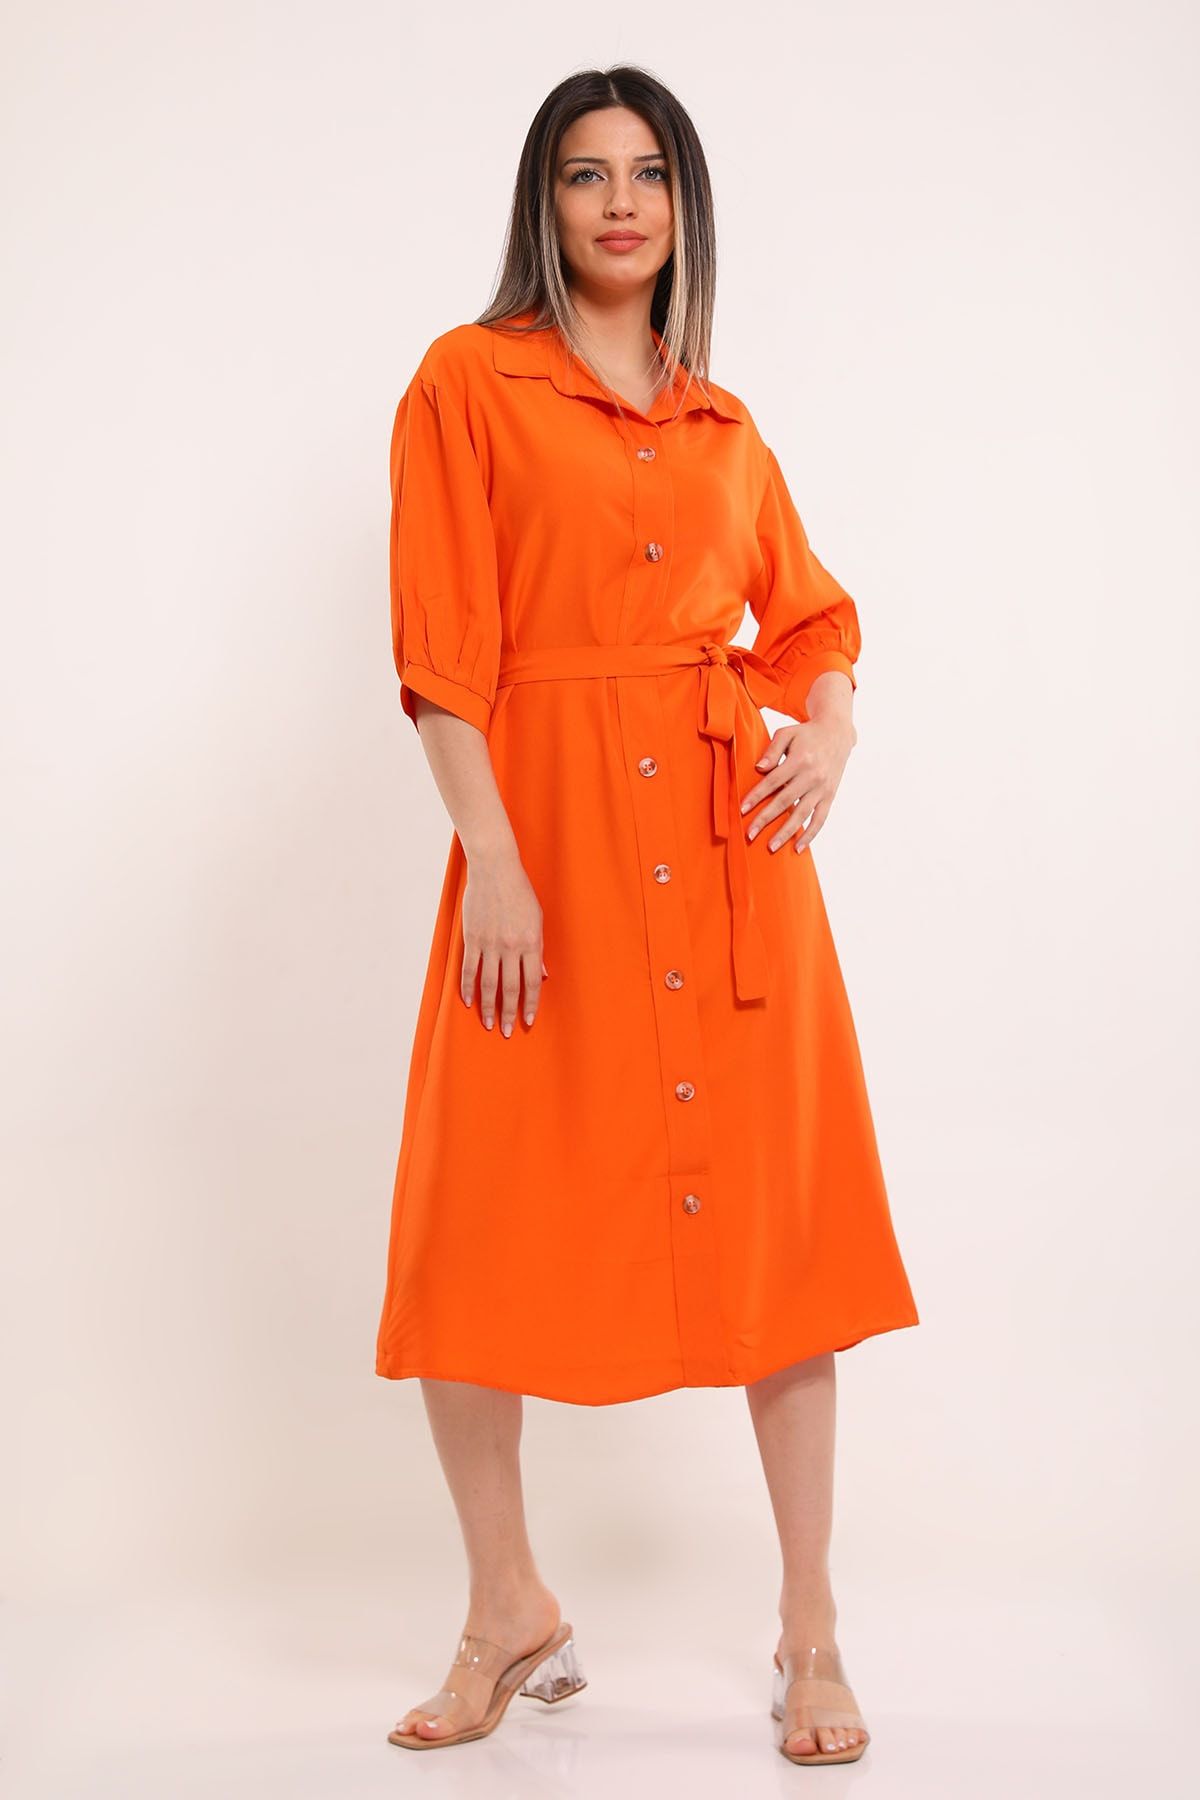 Julude Orange Kadın Boydan Düğmeli Bel Kuşak Detaylı Elbise